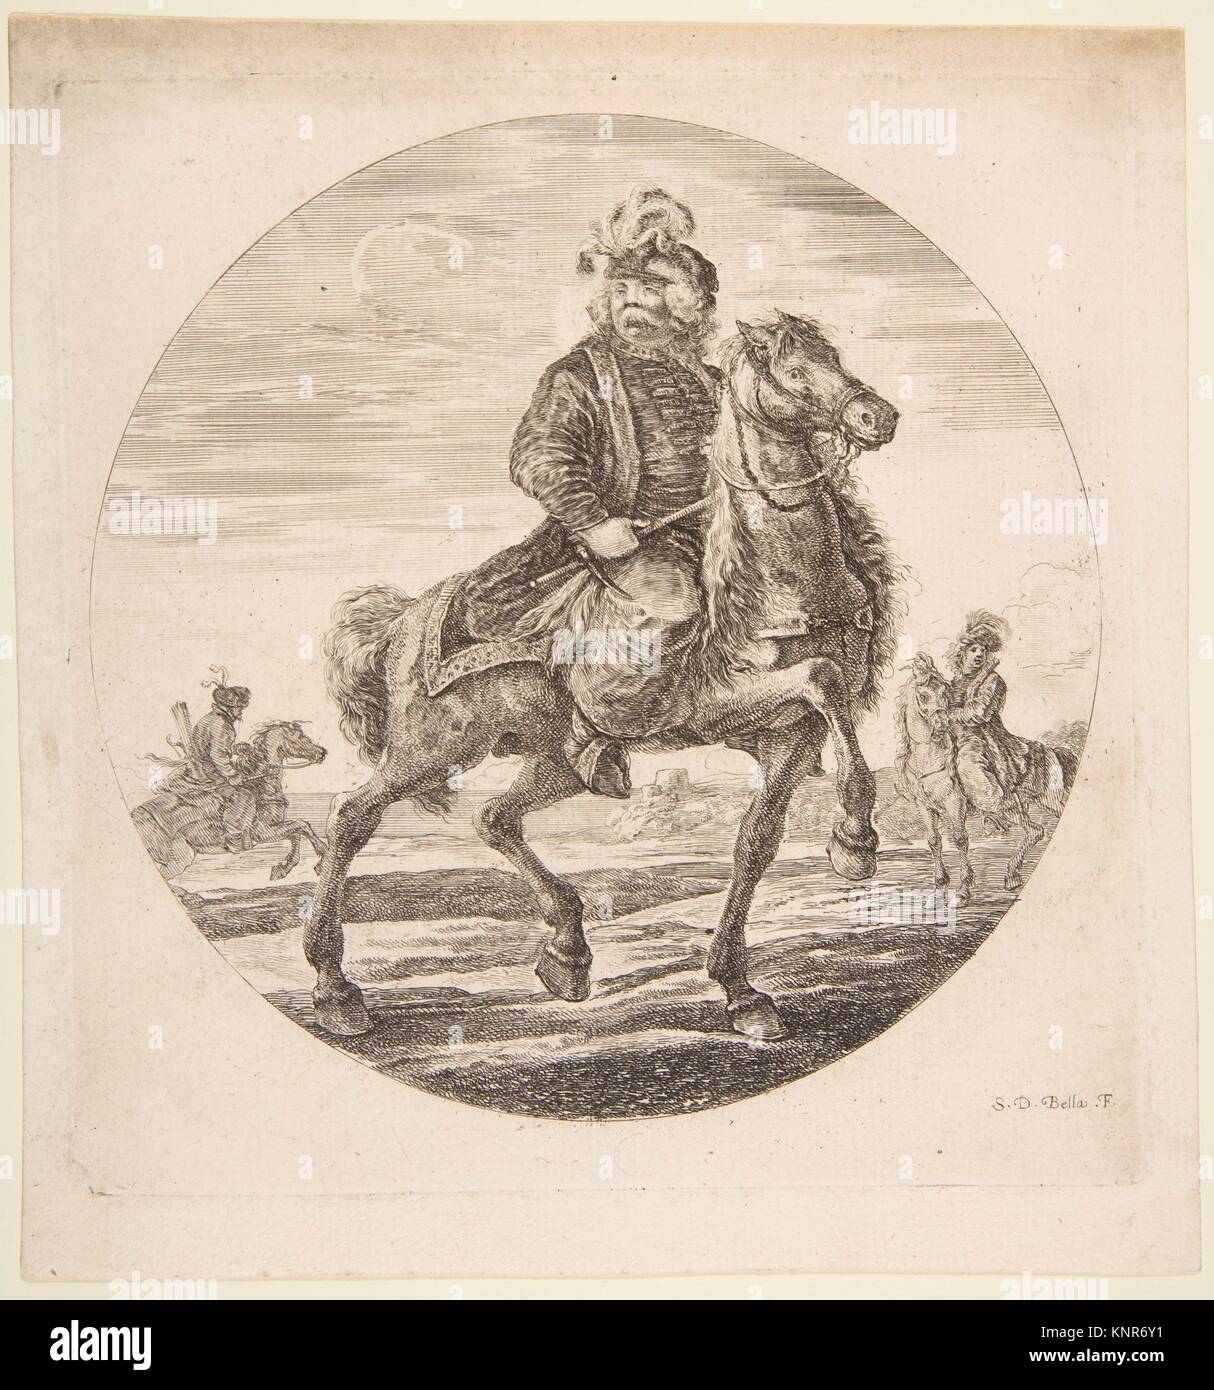 Ungarische Reiter reiten nach rechts, andere Reiter im Hintergrund, eine kreisförmige Zusammensetzung von Figuren zu Pferd" (Kavaliere nègres, Stockfoto